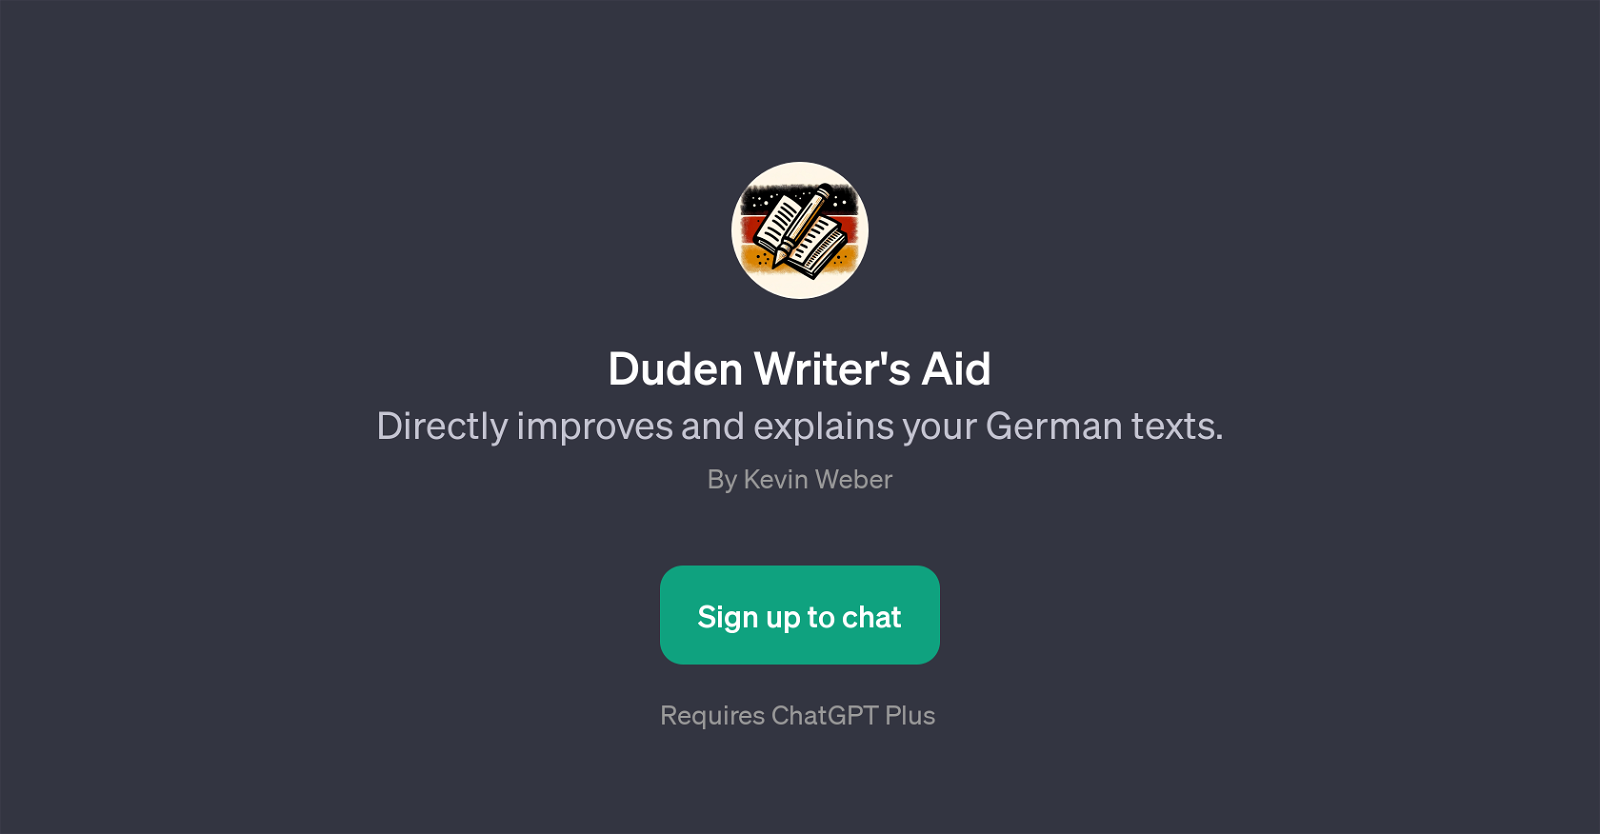 Duden Writer's Aid website